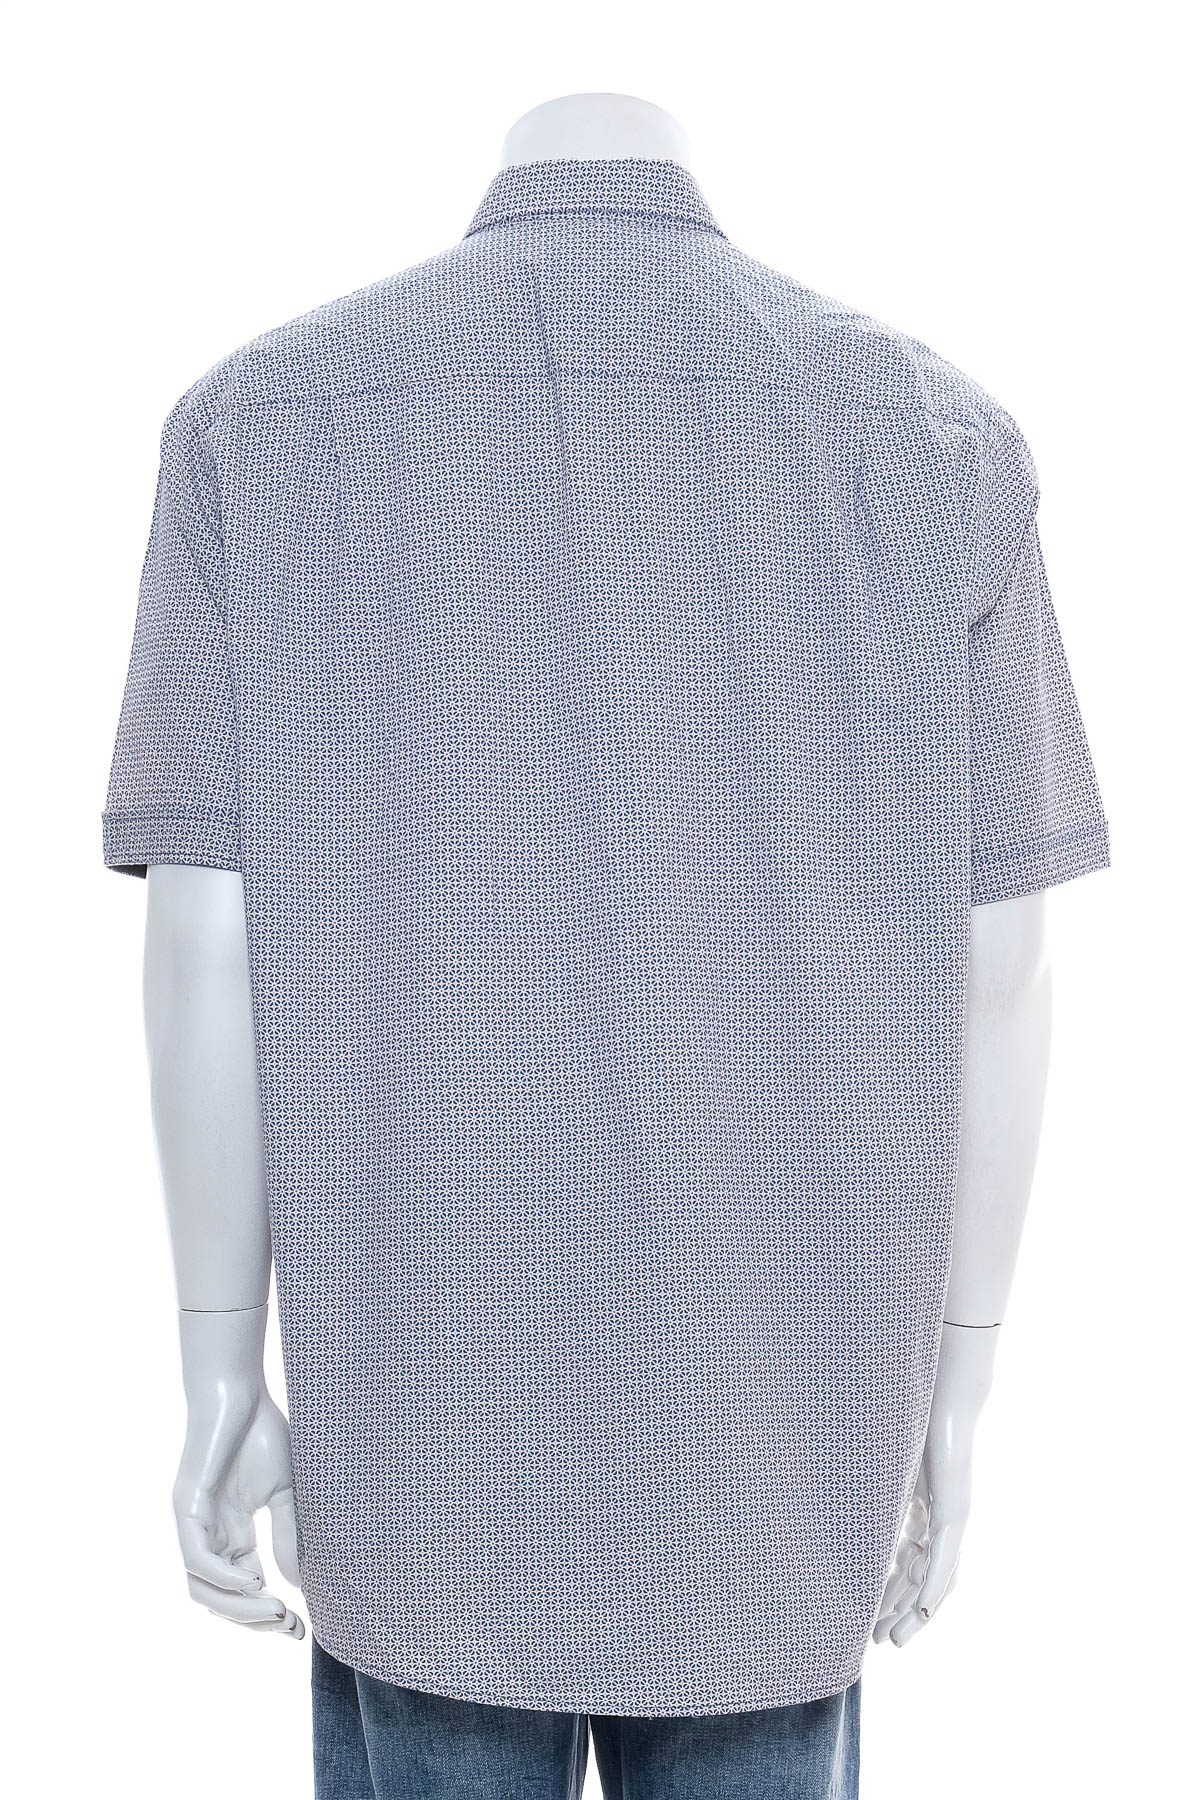 Ανδρικό πουκάμισο - Redmond - 1